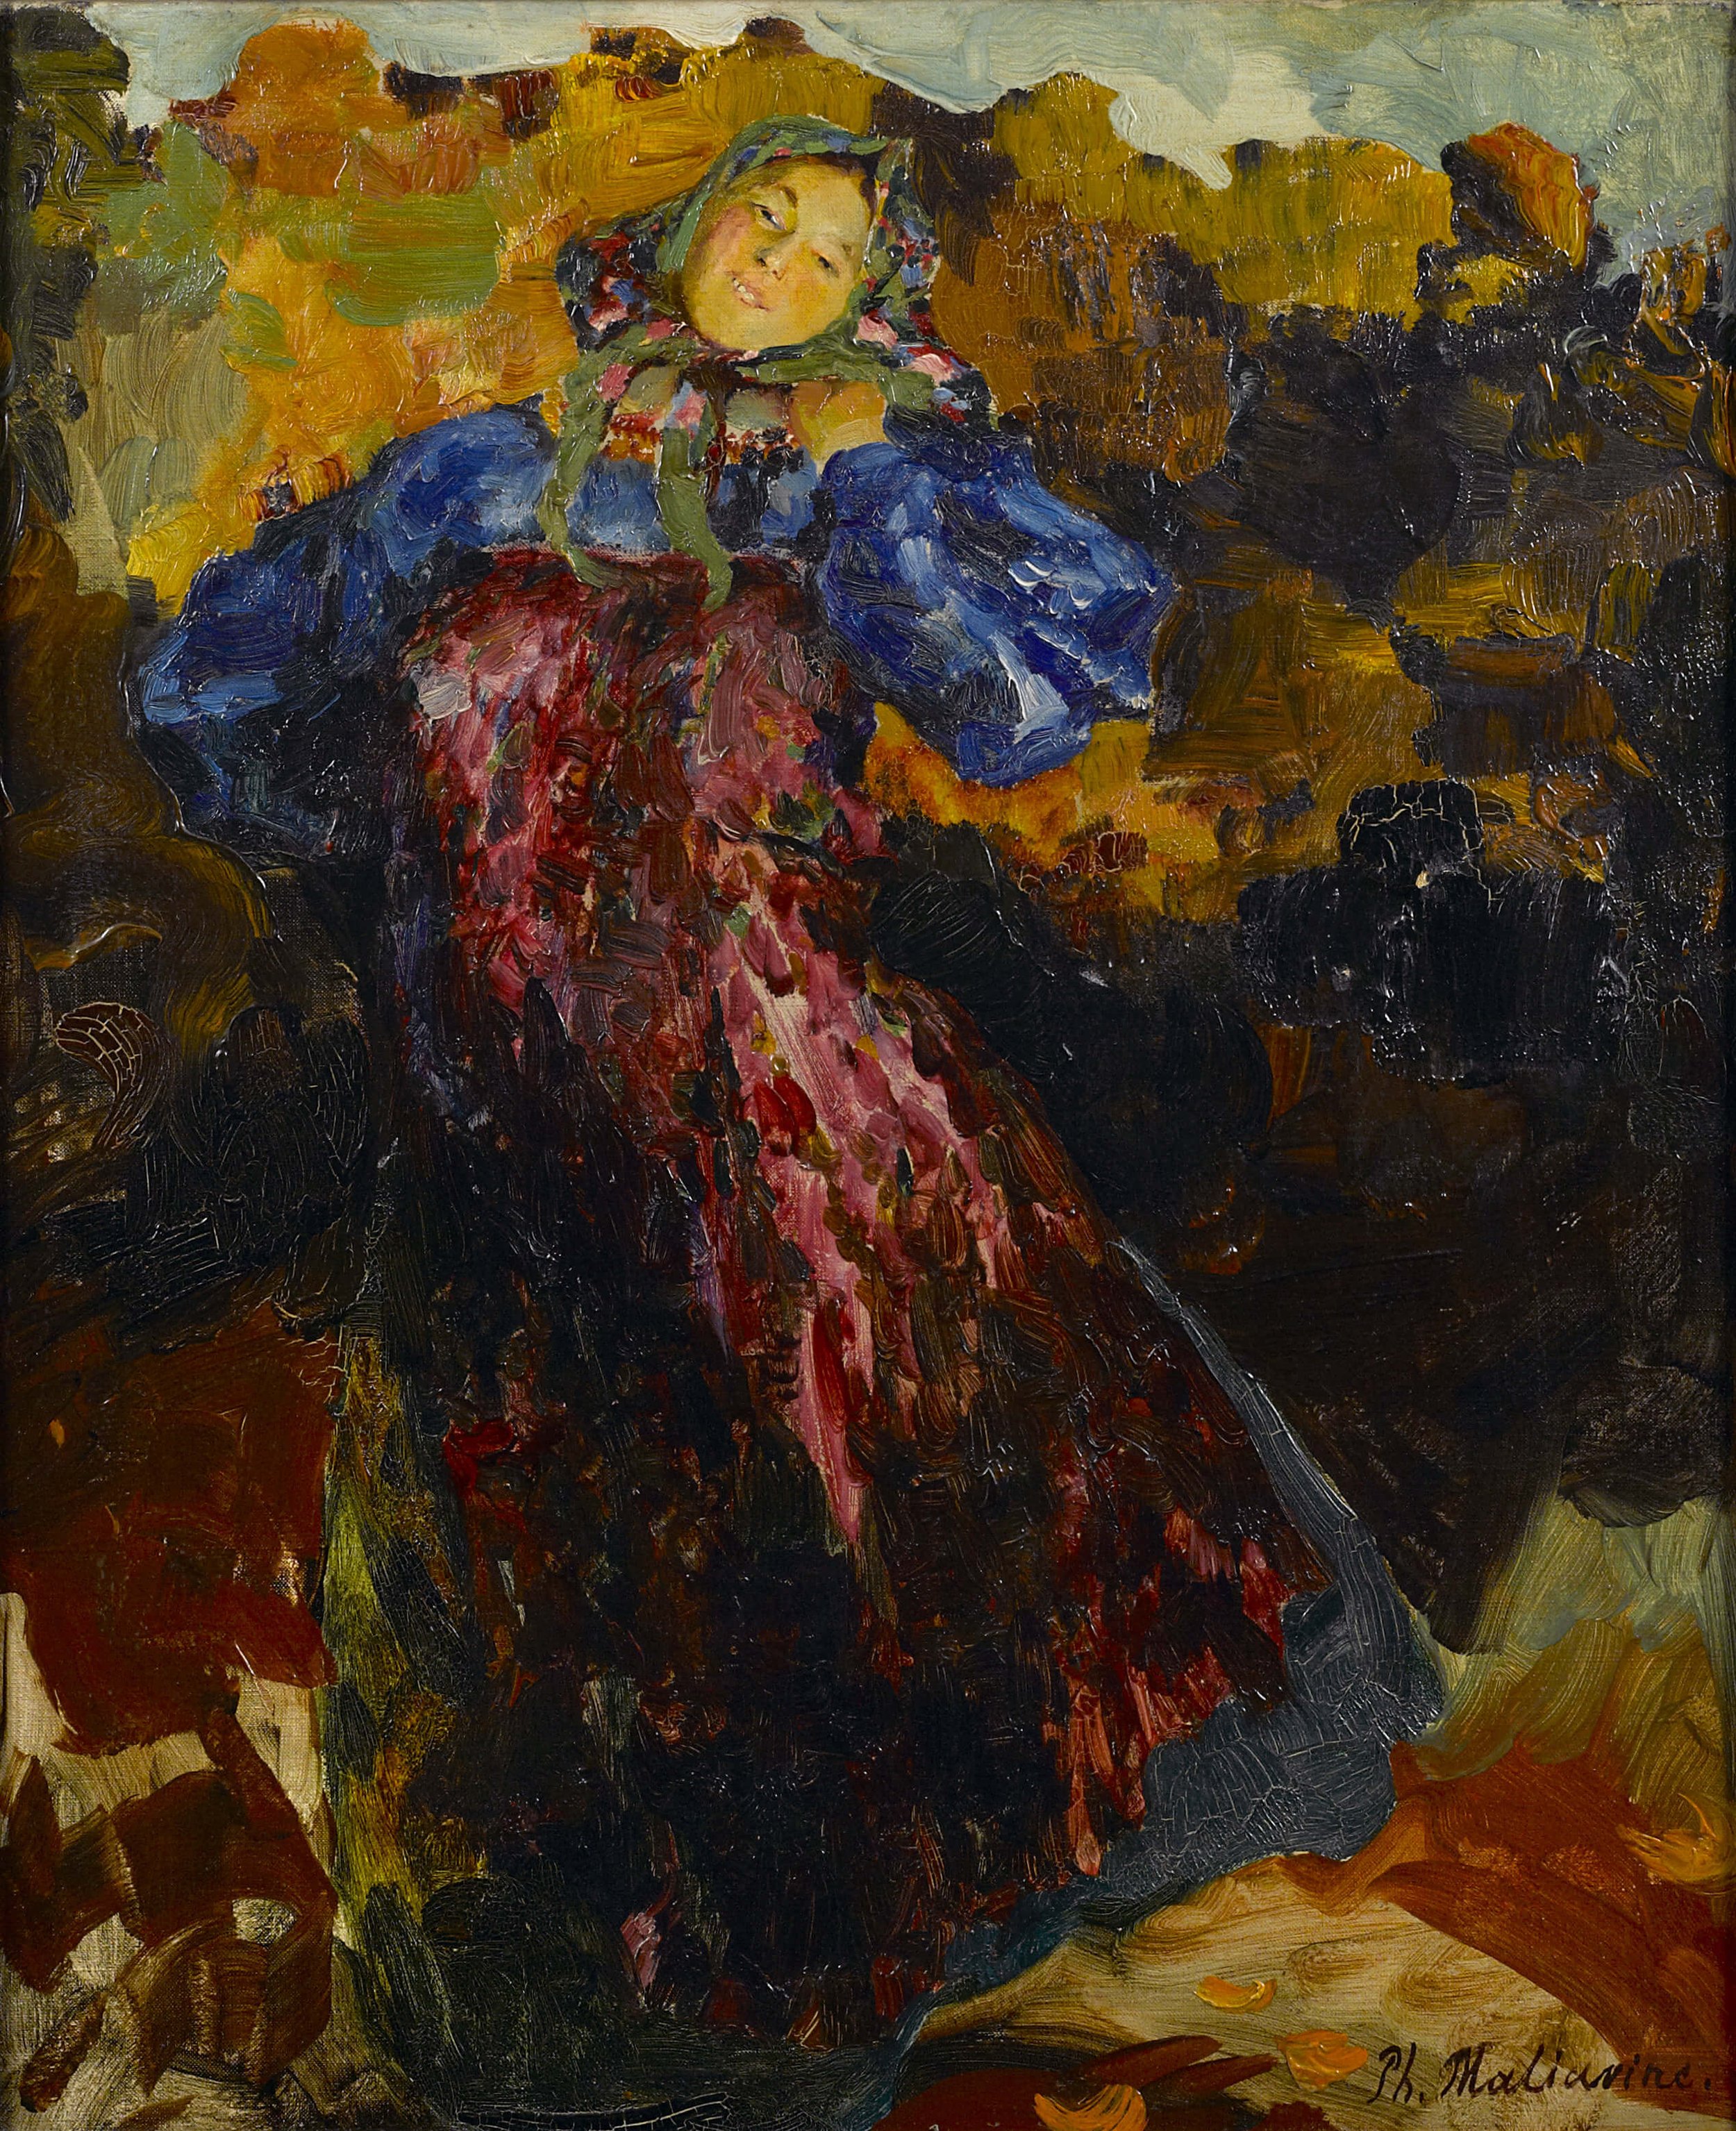 Philip Maliavin, The Young Girl, oil on canvas, 55.5 x 46.3 cm.jpg